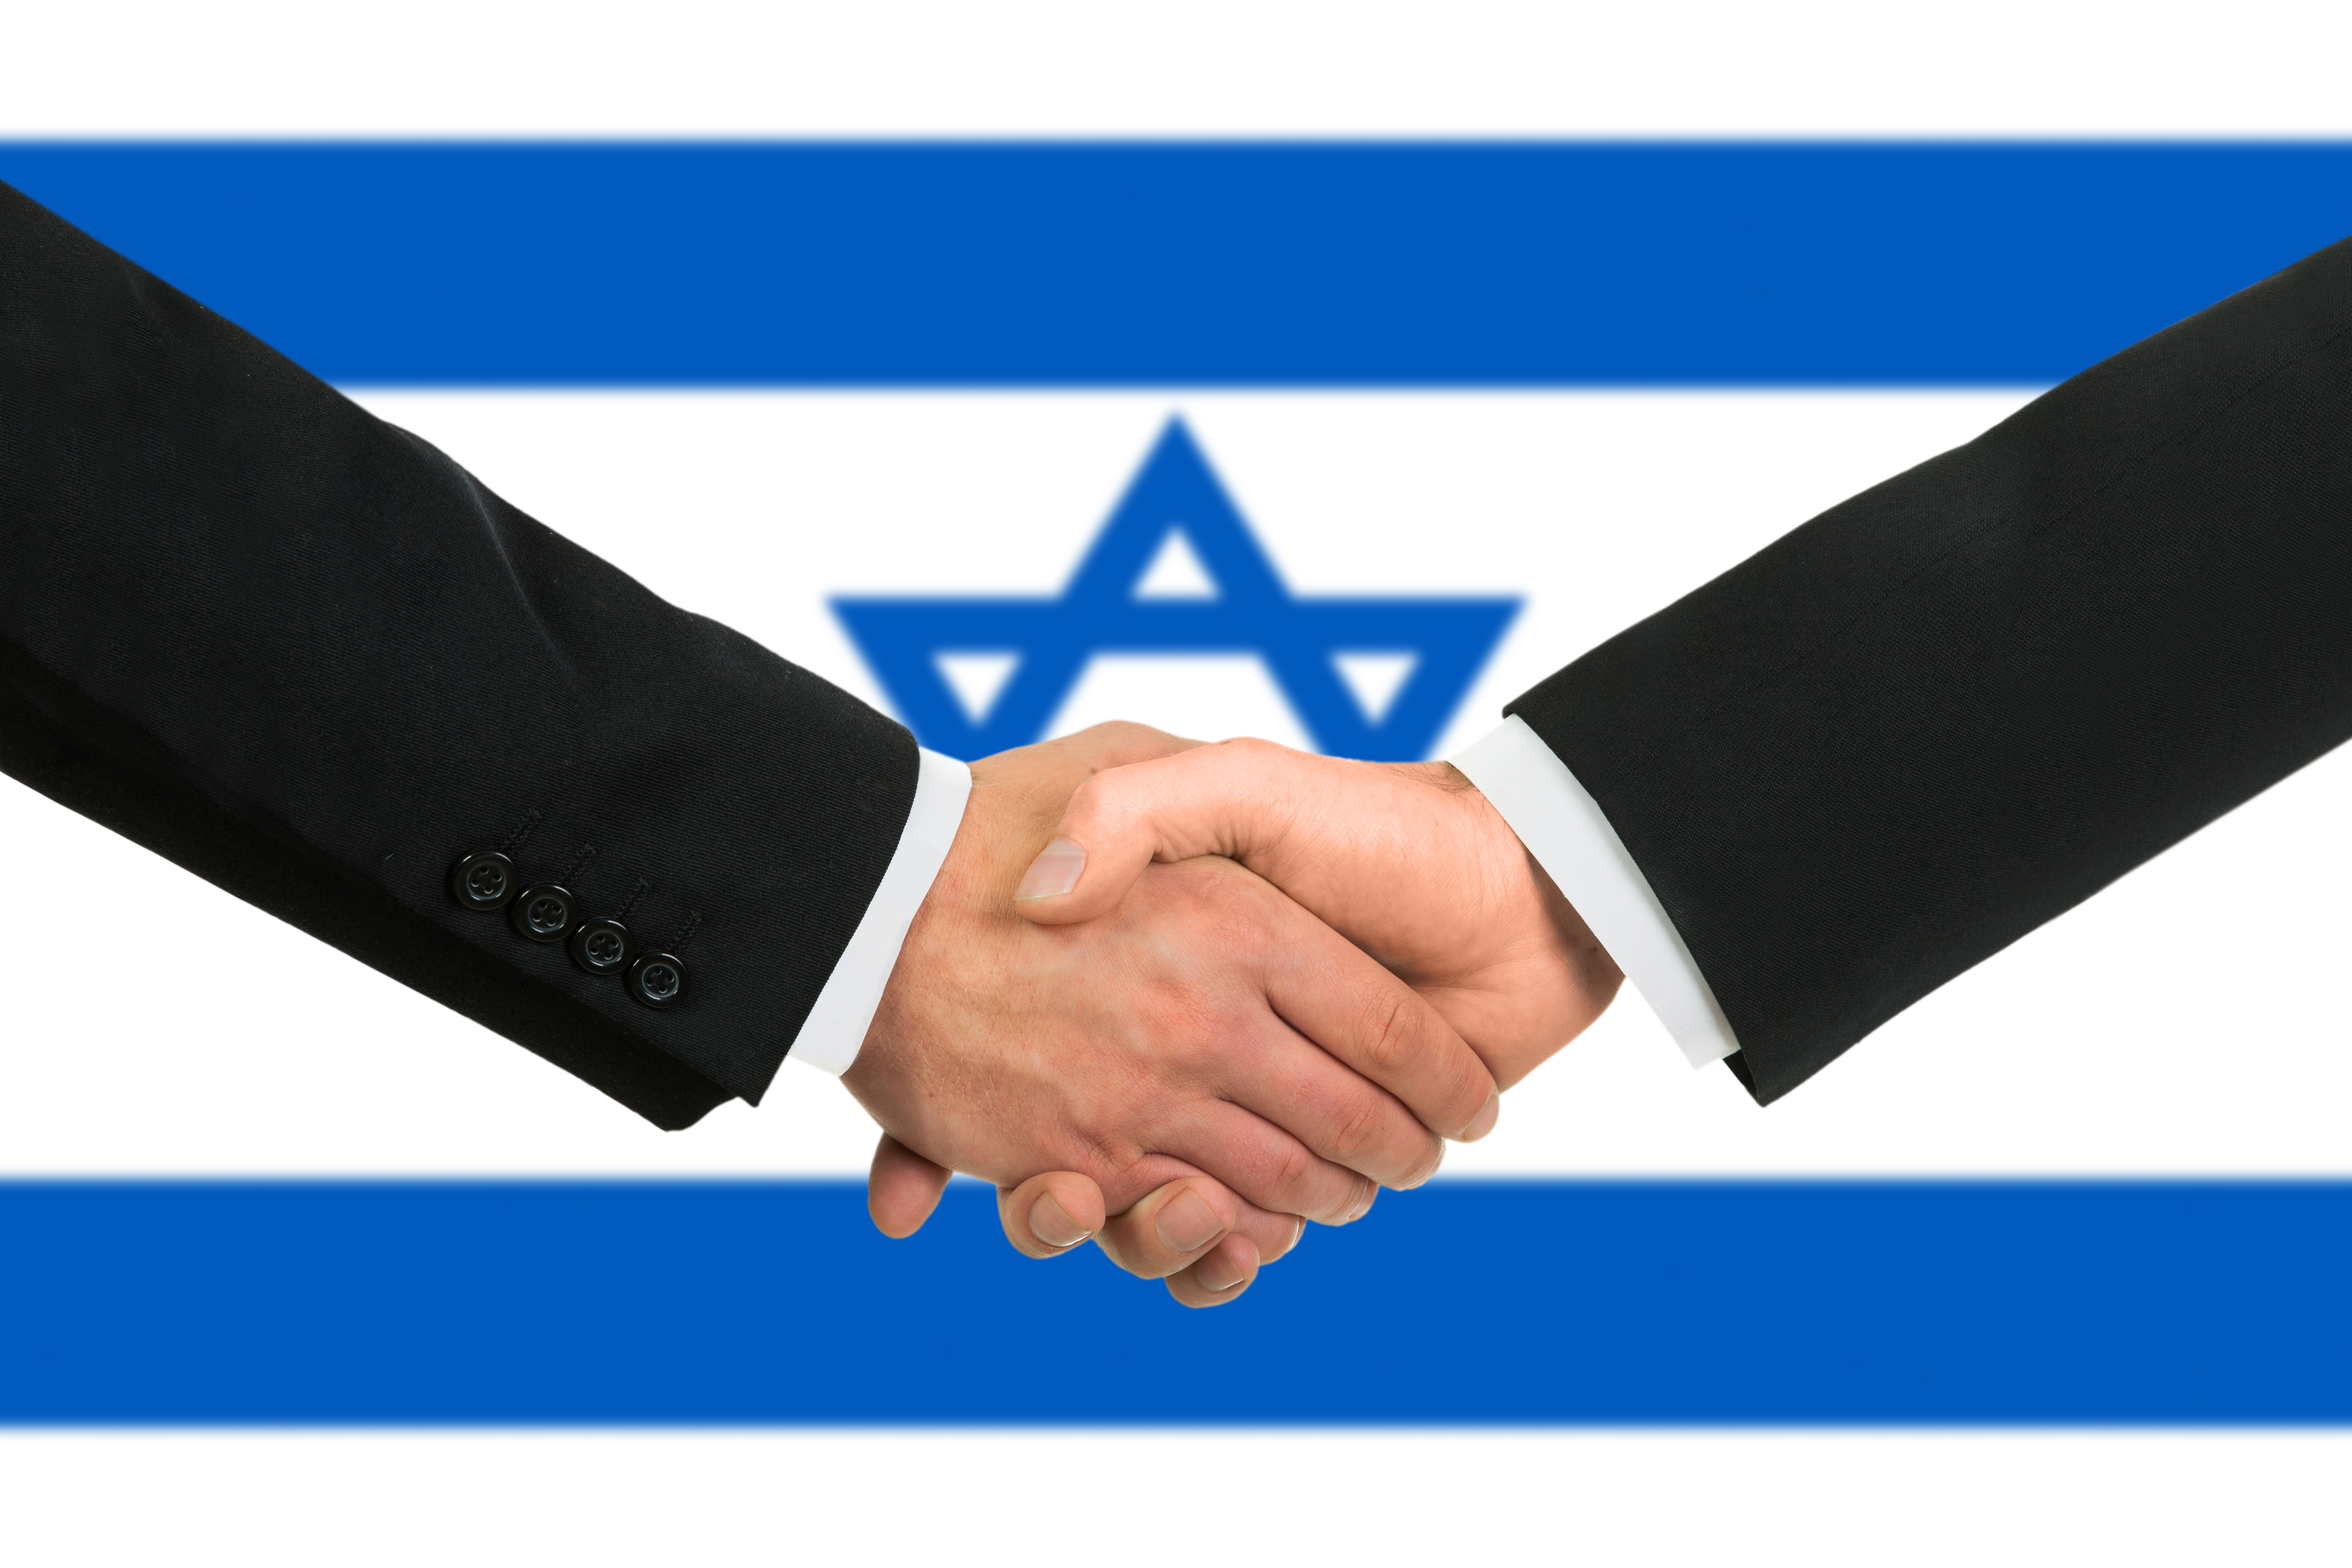 Работа и бизнес в израиле для иностранцев: документы, программы